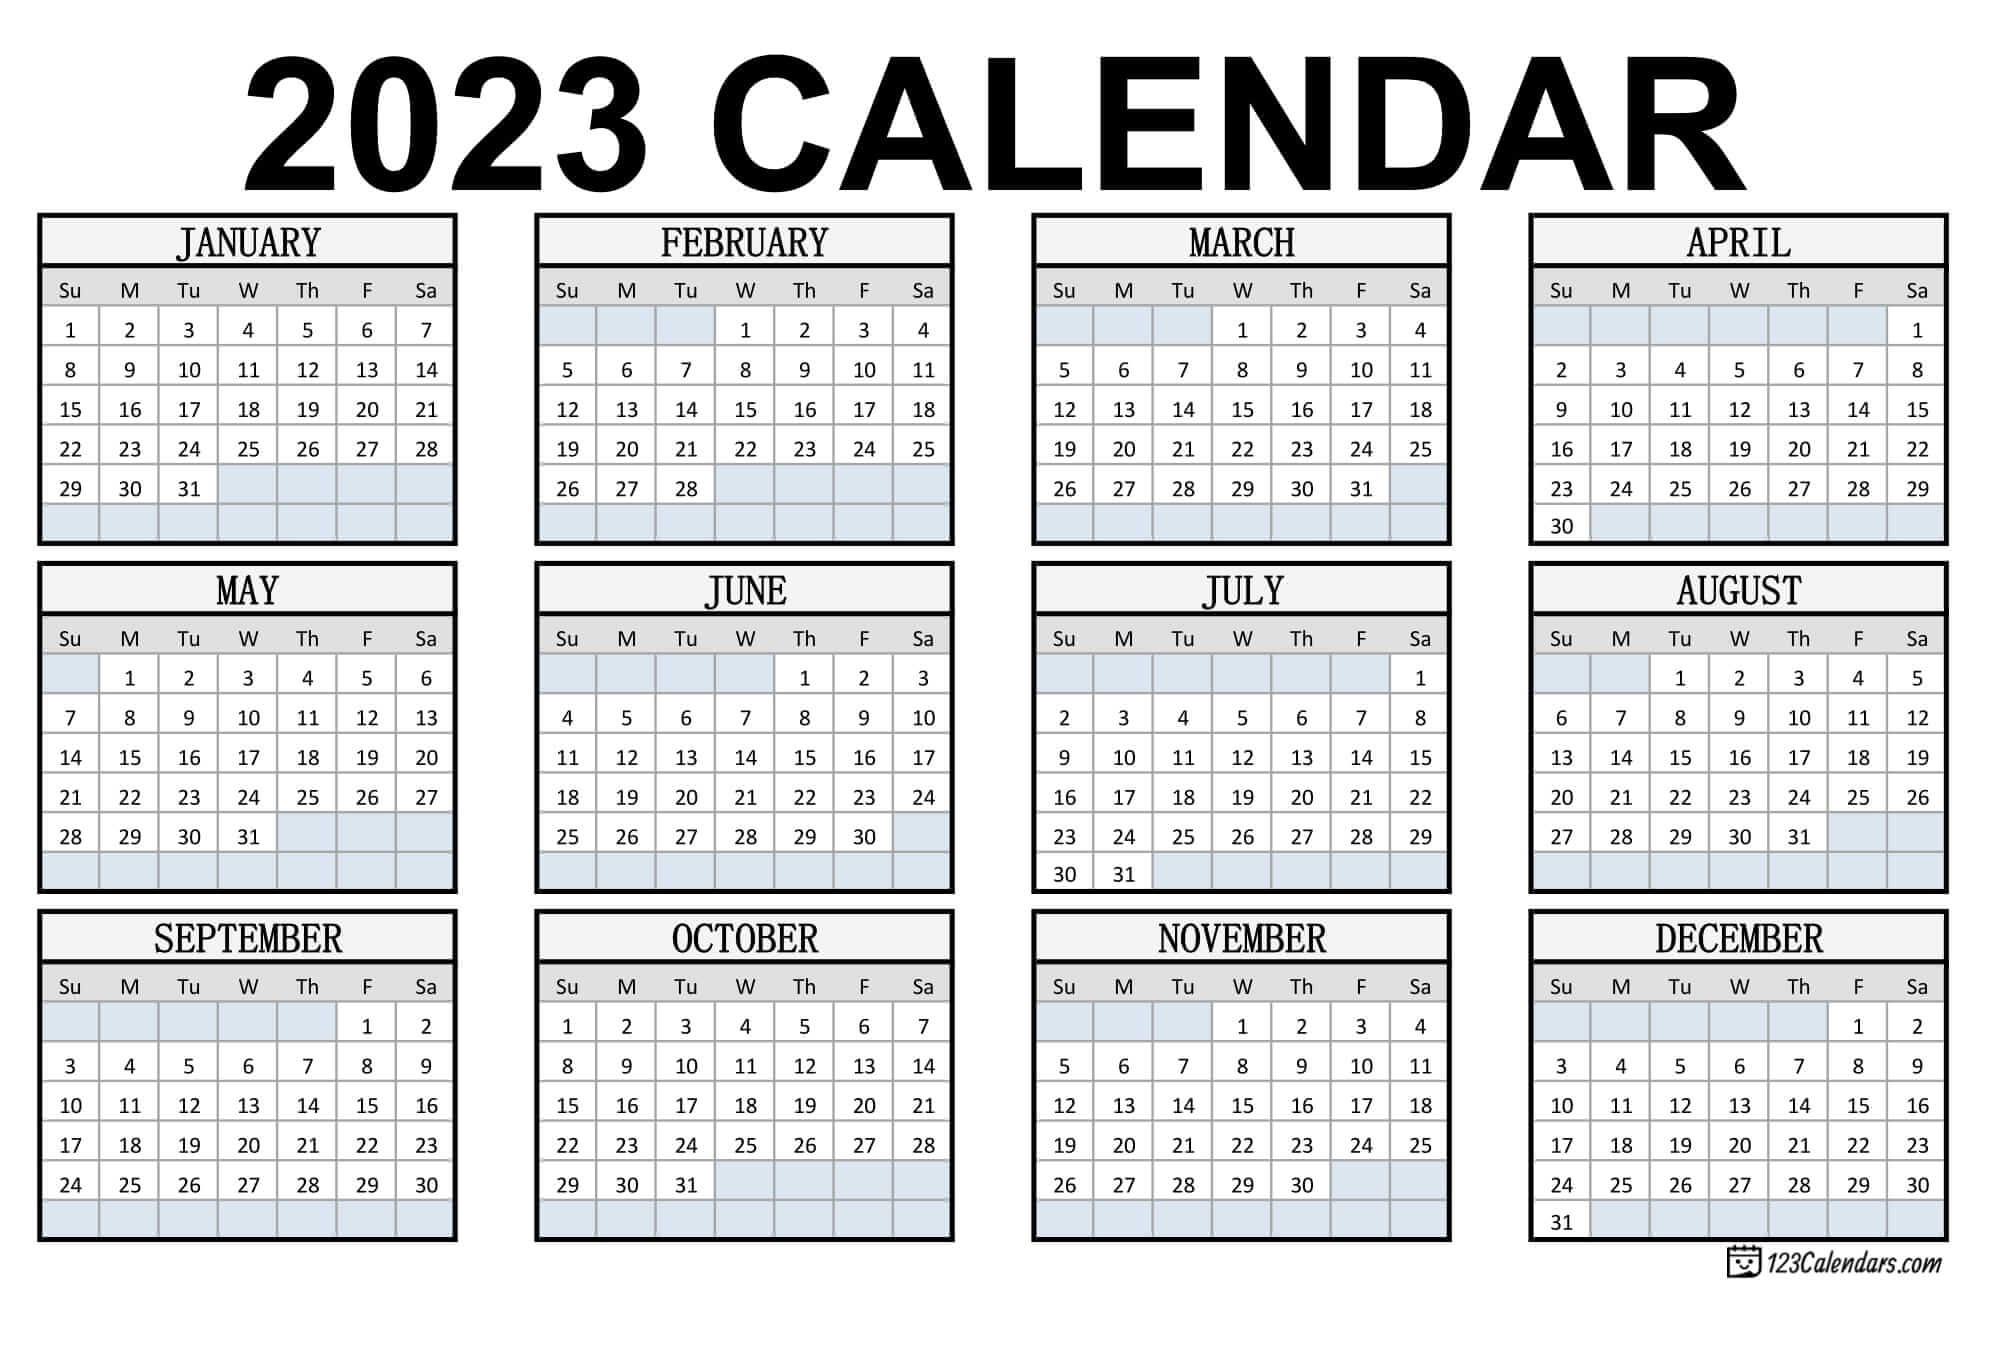 2023 Schedule